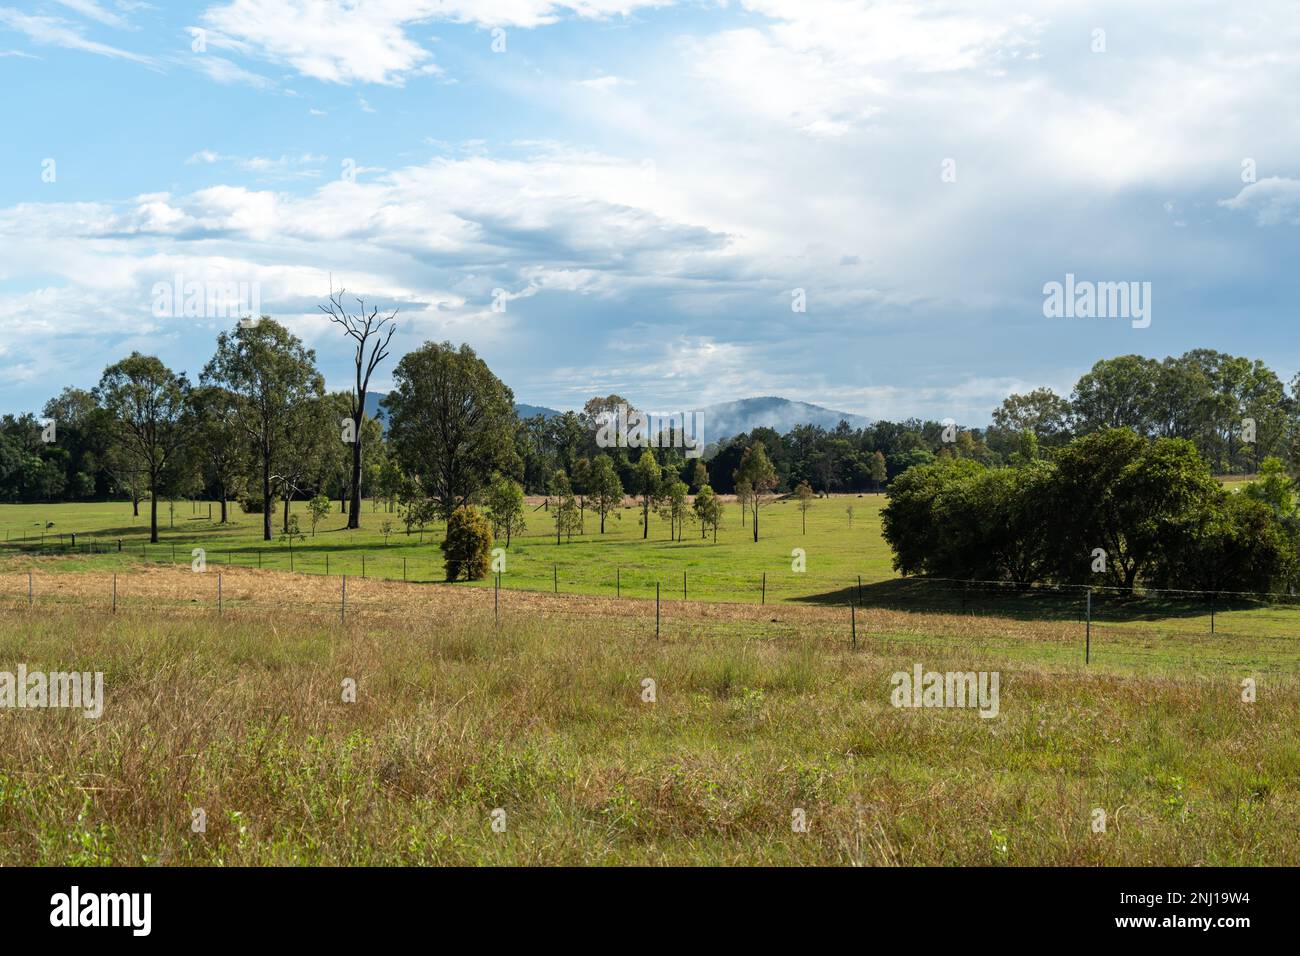 Ländliche Landschaft mit Gras, Kaddocks, Bäumen und bewölktem Himmel Stockfoto